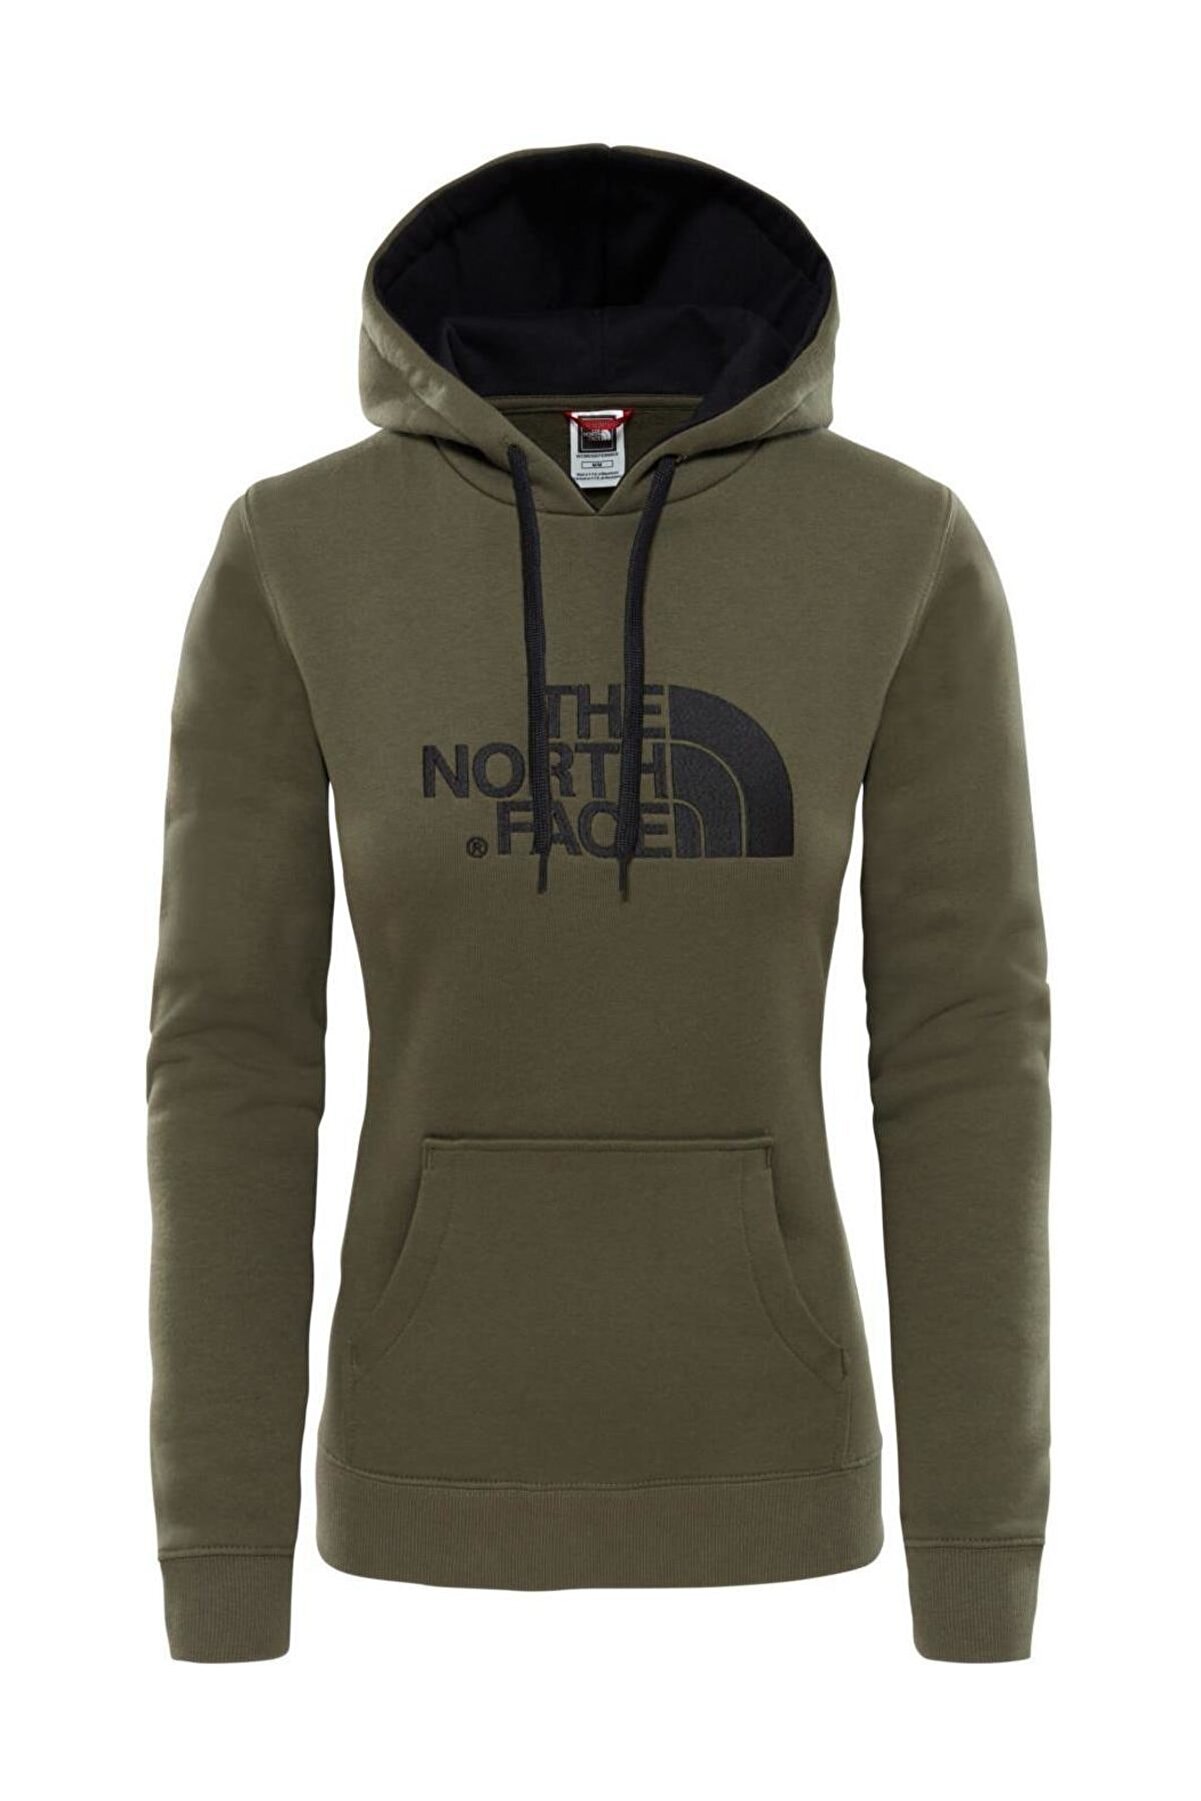 The North Face Drew Peak Pull Kadın Sweatshirt Lacivert